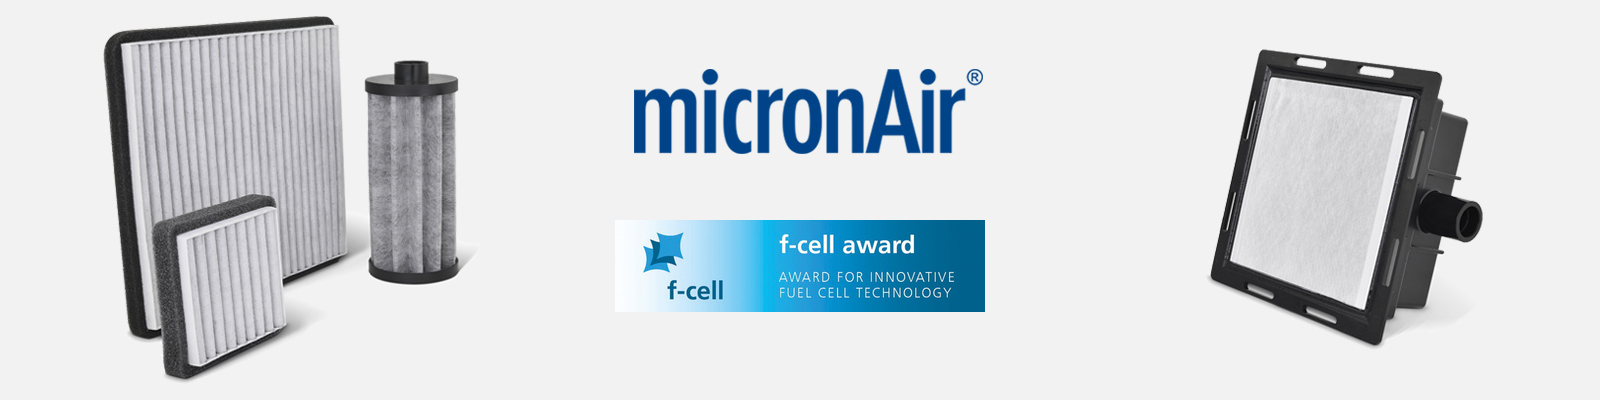 micronAir f-cell